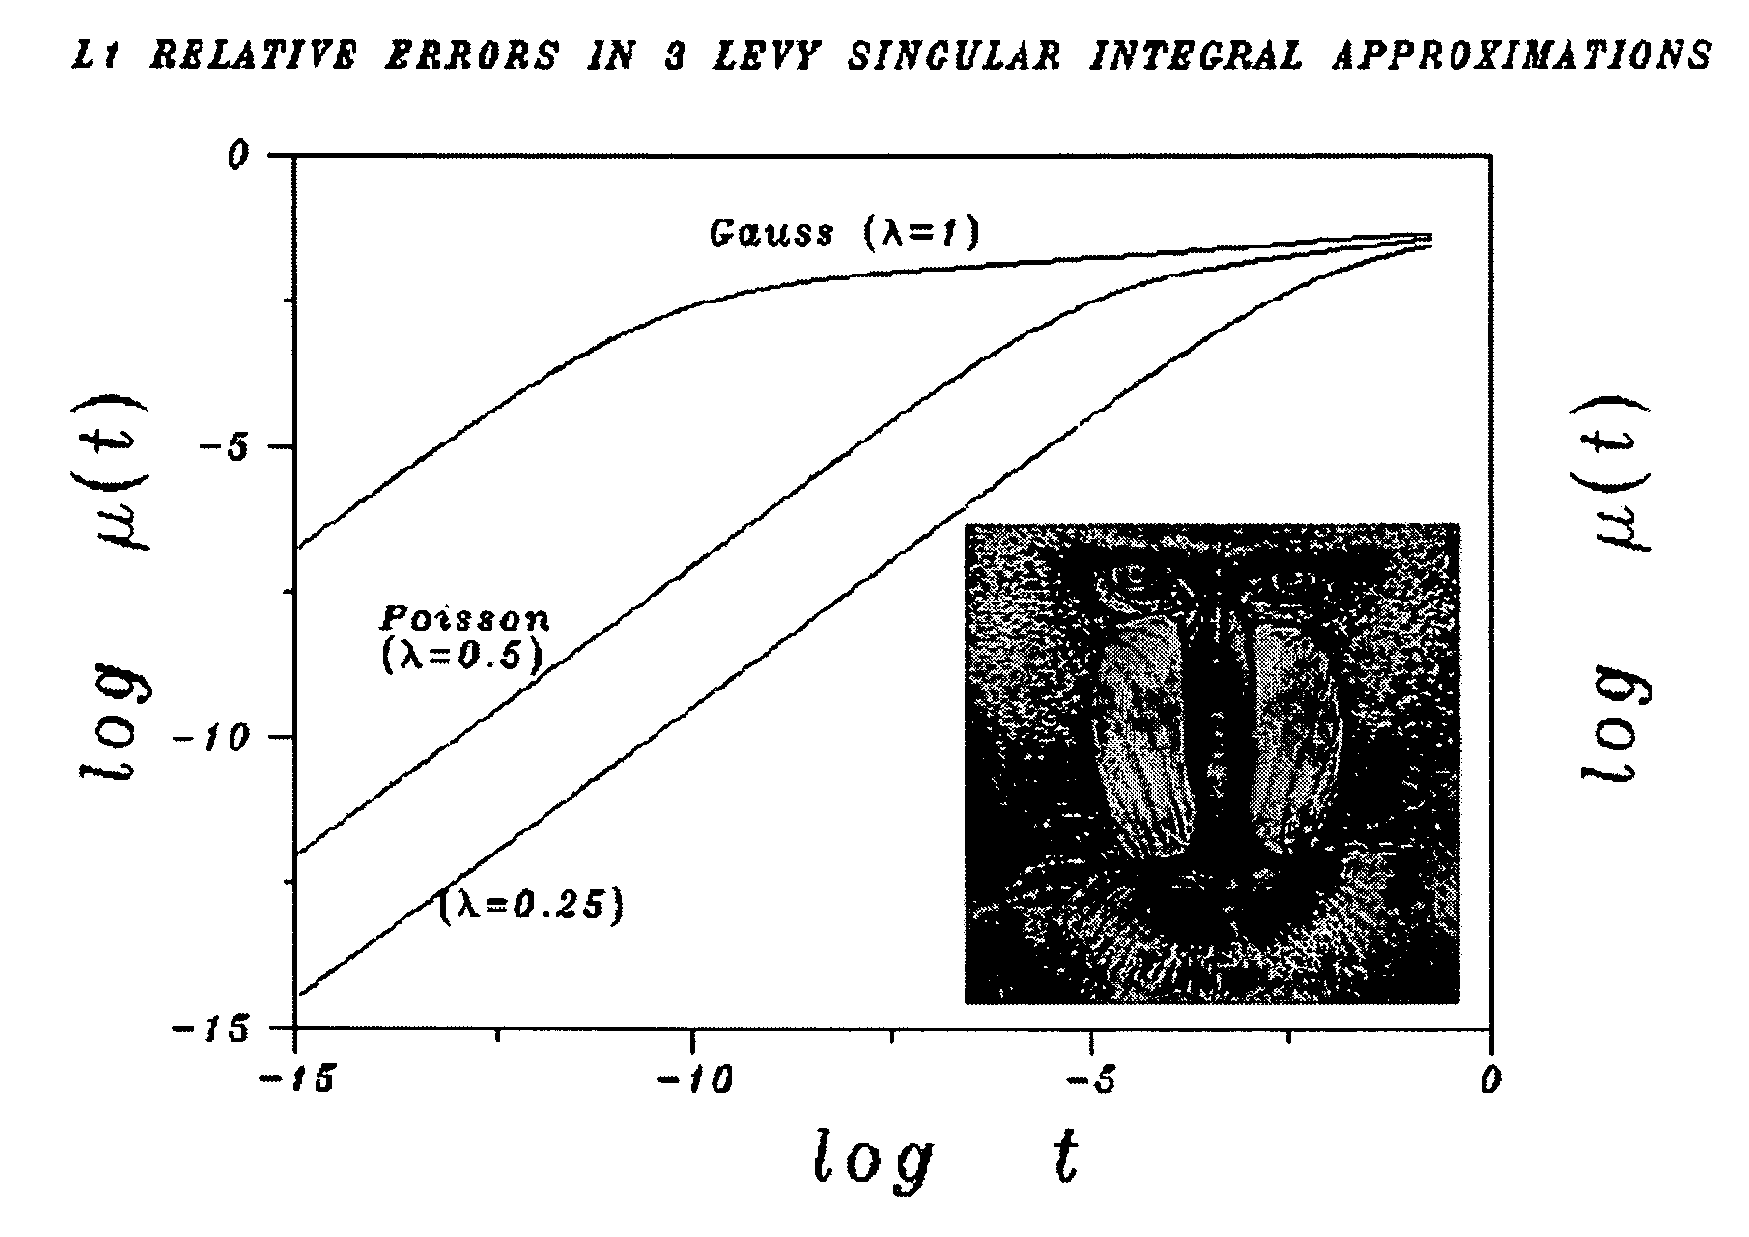 Singular integral image deblurring method